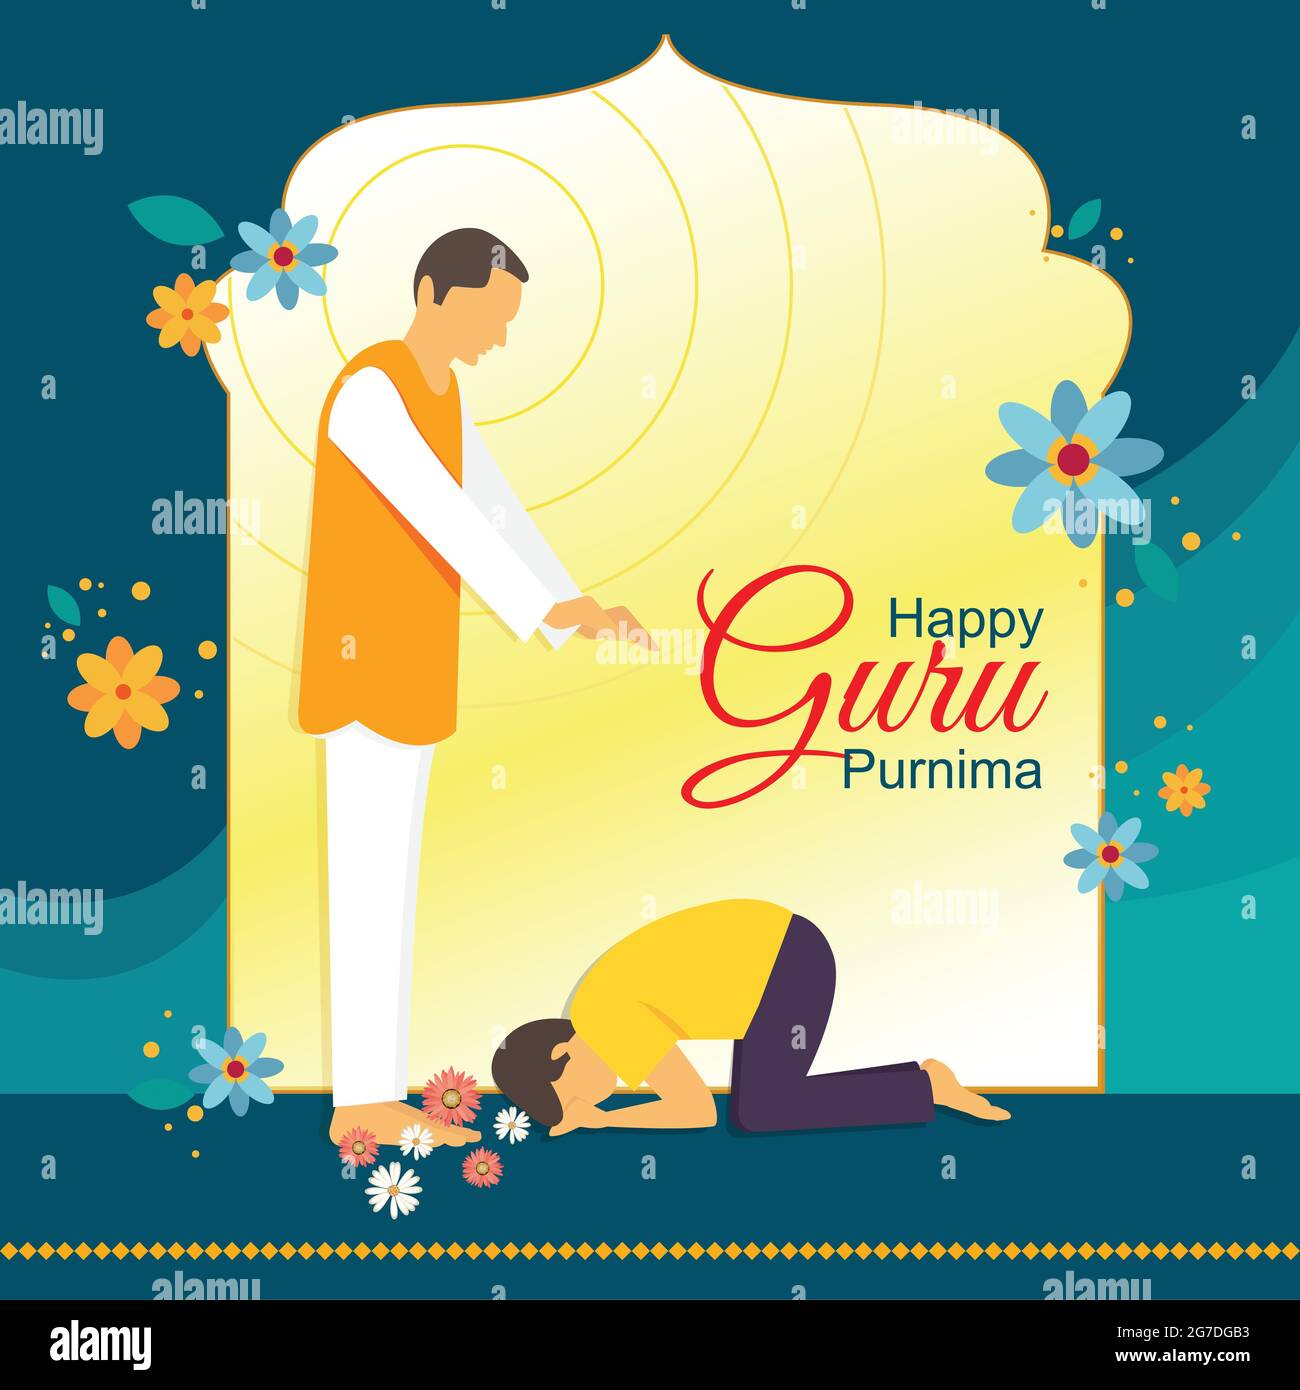 Affiche de célébration de Guru Purnima avec l'enseignant donnant une bénédiction à l'étudiant. Le fond est décoré dans des tons de bleu et de jaune. Illustration de Vecteur